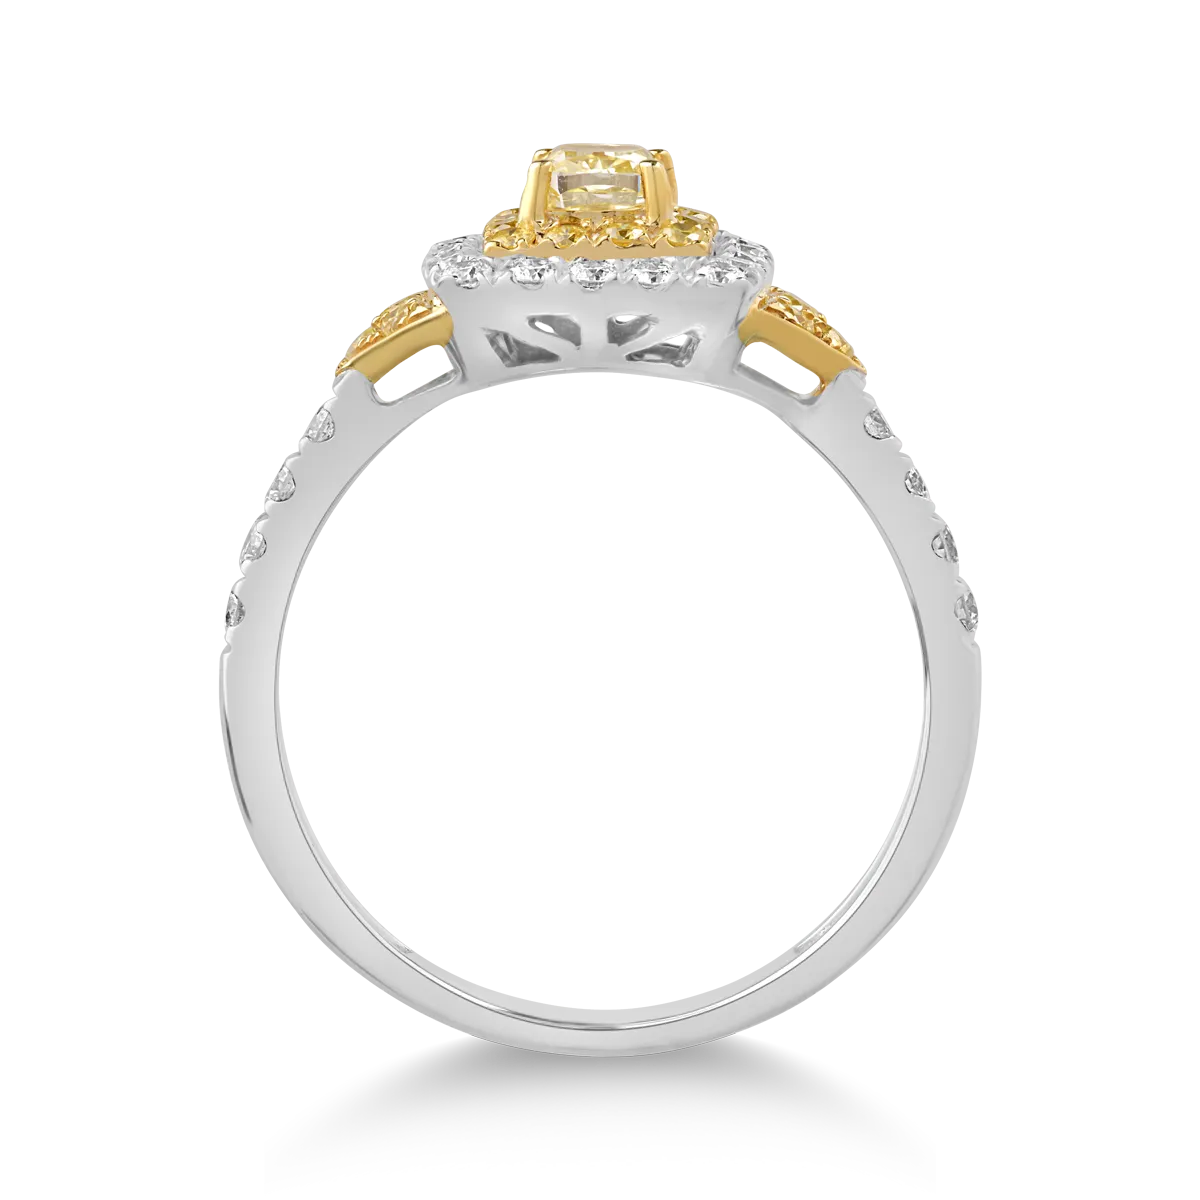 18 karátos fehér-sárga arany gyűrű 0,39 karátos tiszta gyémántokkal és 0,54 karátos sárga gyémántokkal